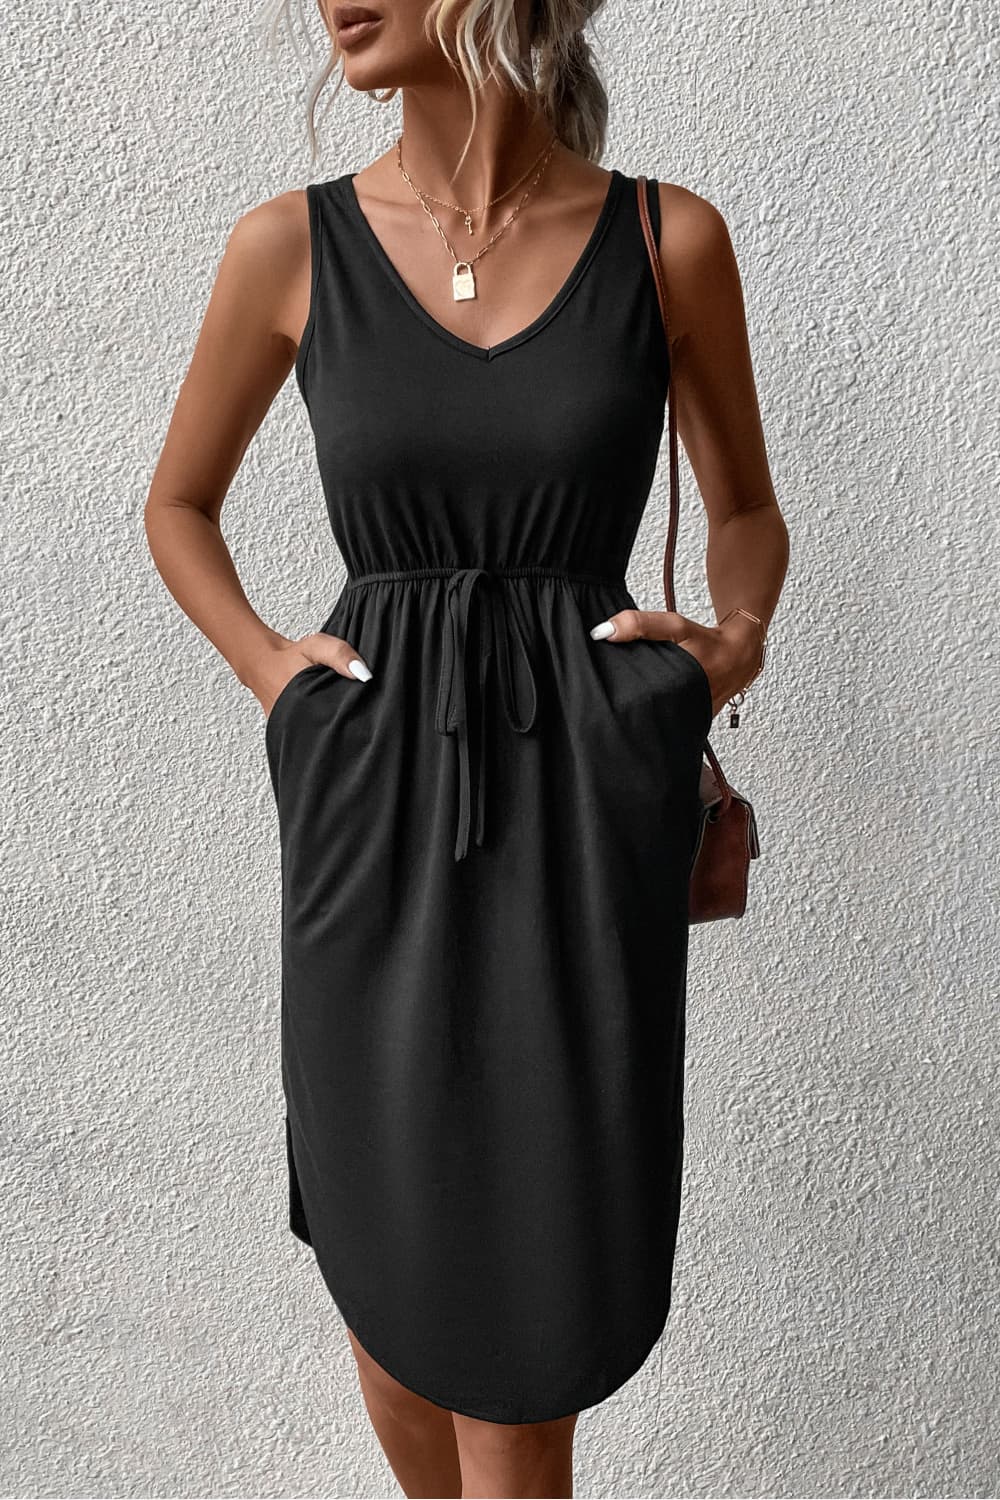 Stylish V-Neck Curved Hem Sleeveless Dress Black